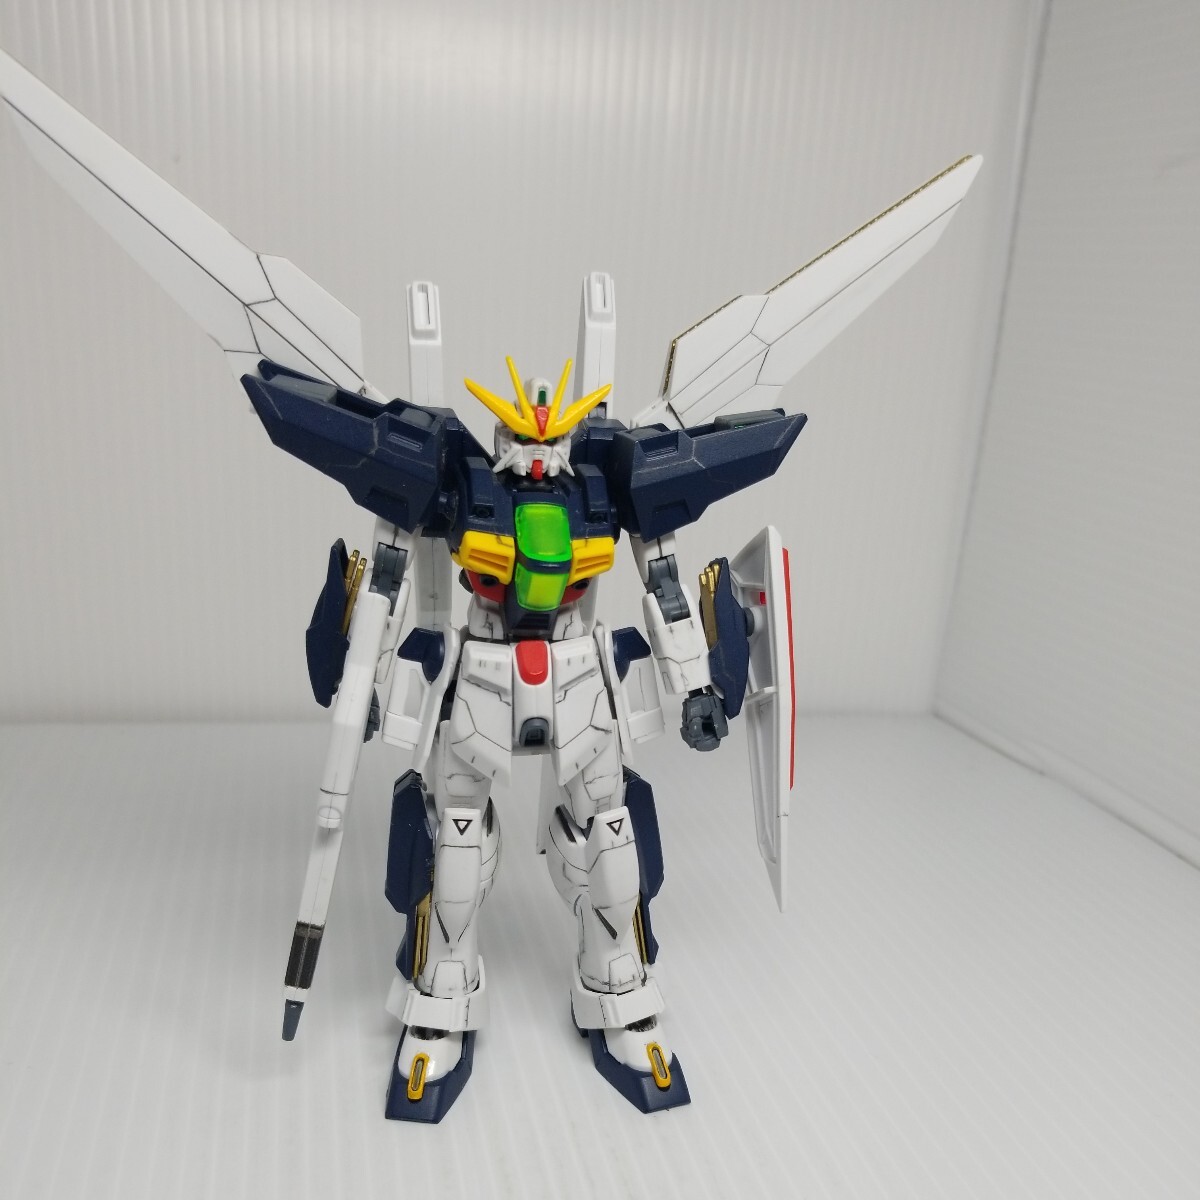 oka-80g 5/17 HG Gundam XX включение в покупку возможно gun pra Junk 